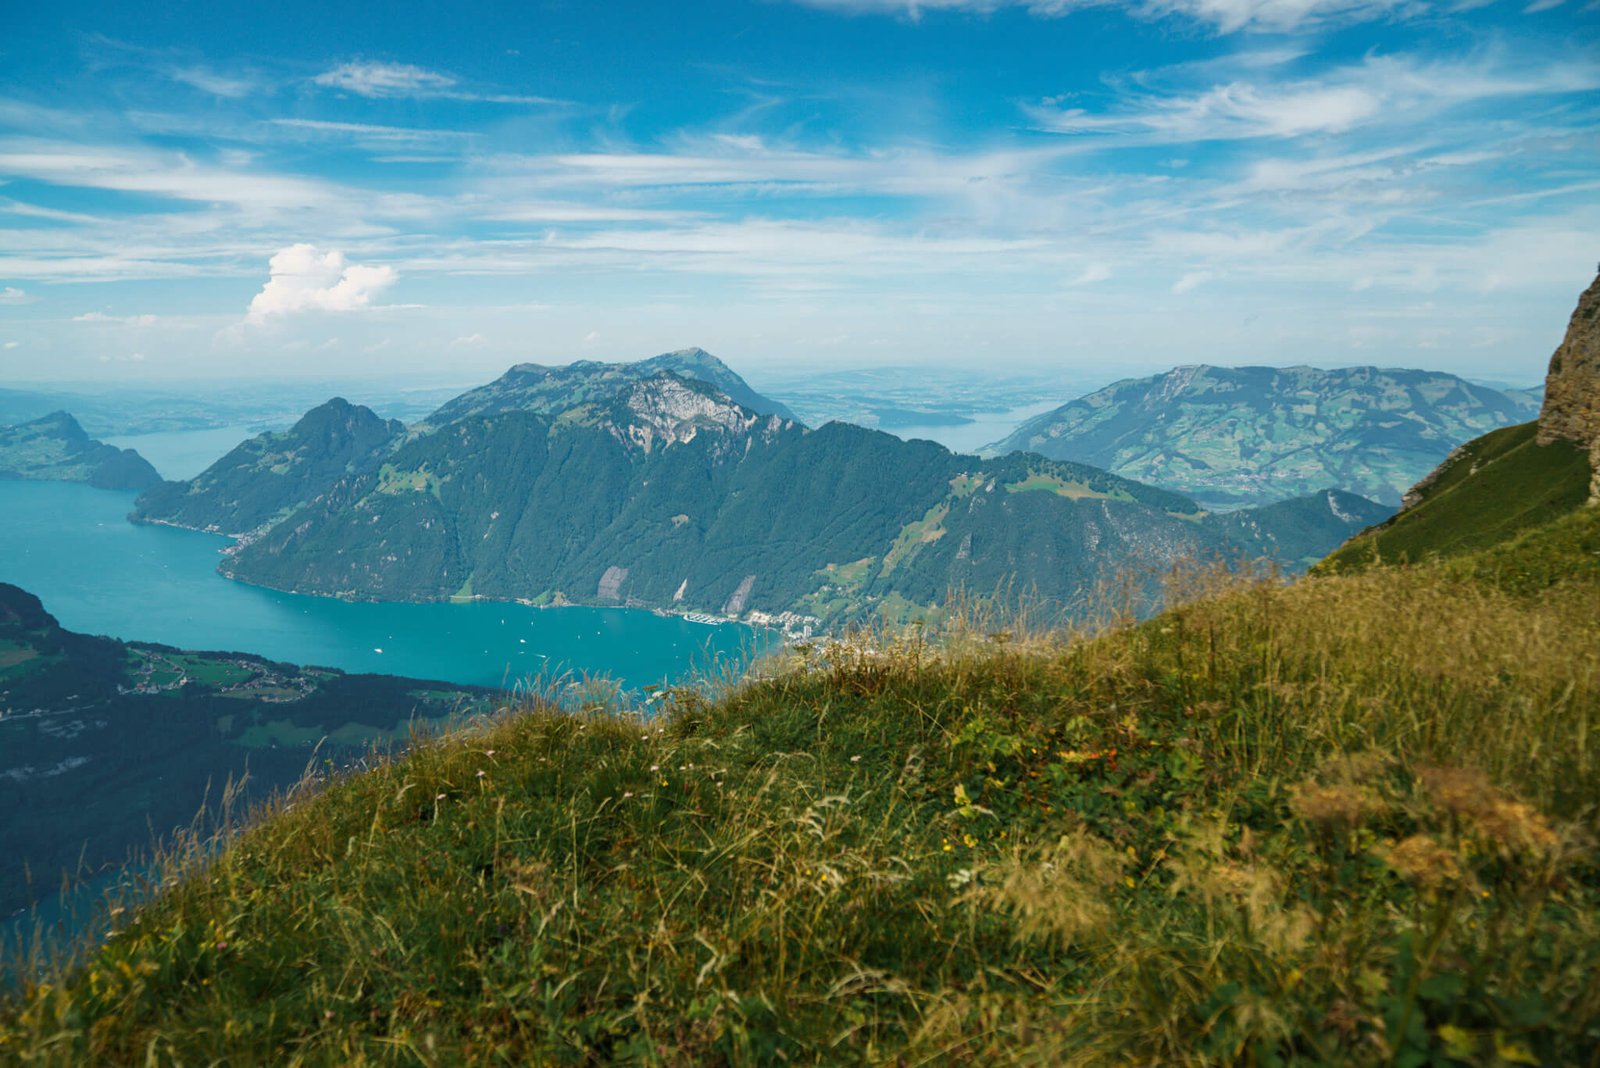 Stoos RIdge hike in Switzerland